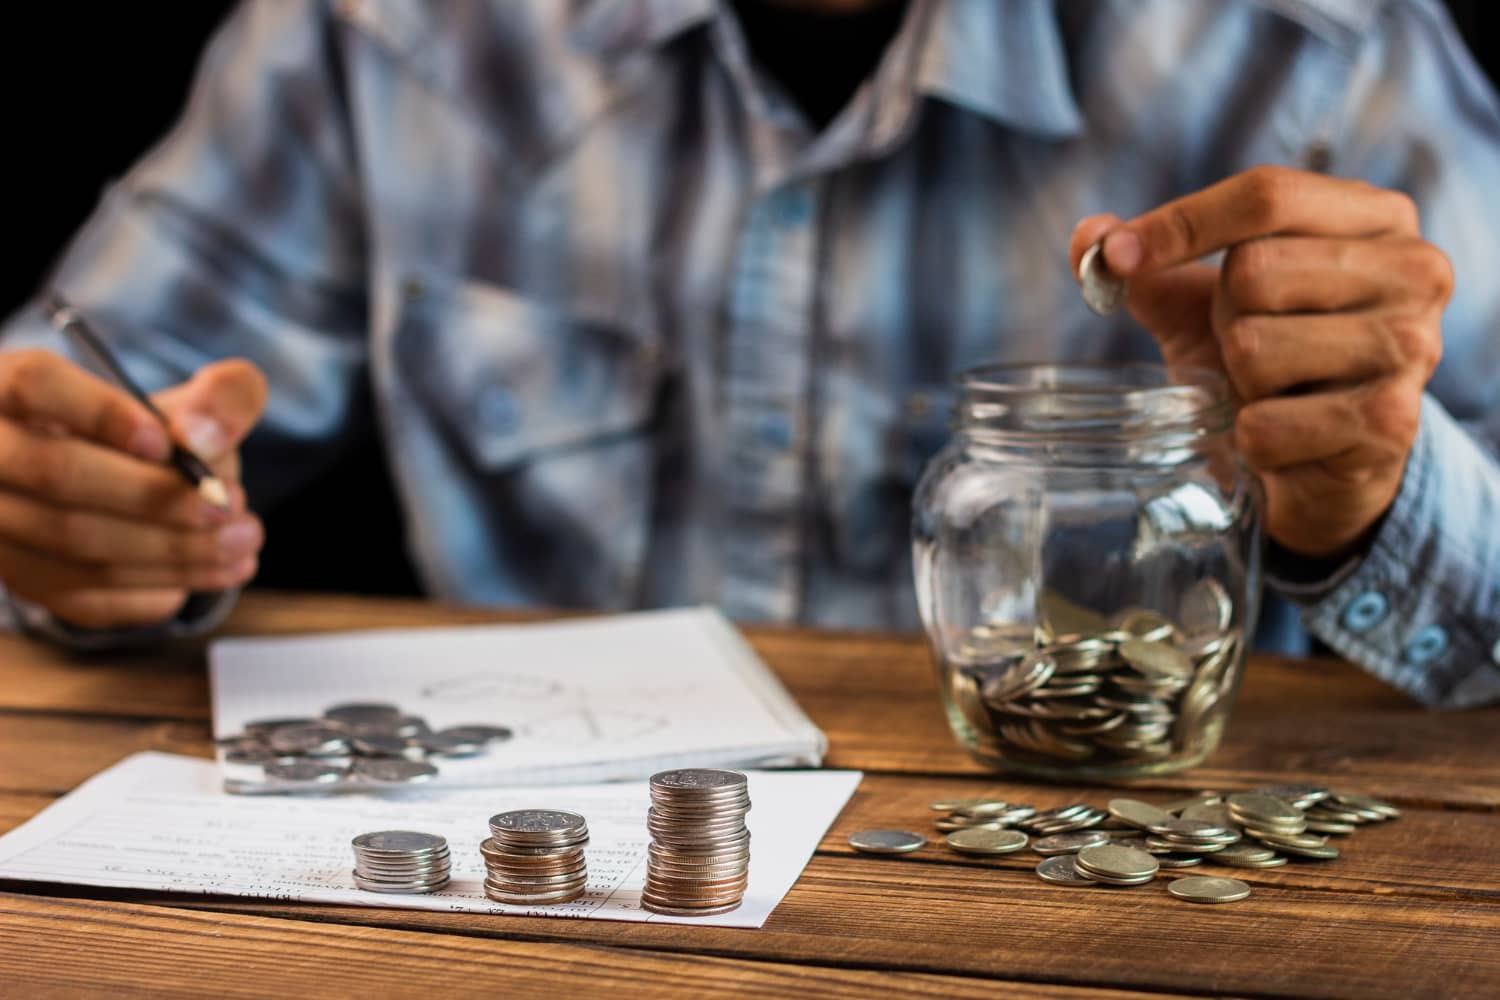 Imagem representando como declarar previdência privada no Imposto de Renda, mostrando uma pessoa em uma atividade de economizar dinheiro para sua aposentadoria.